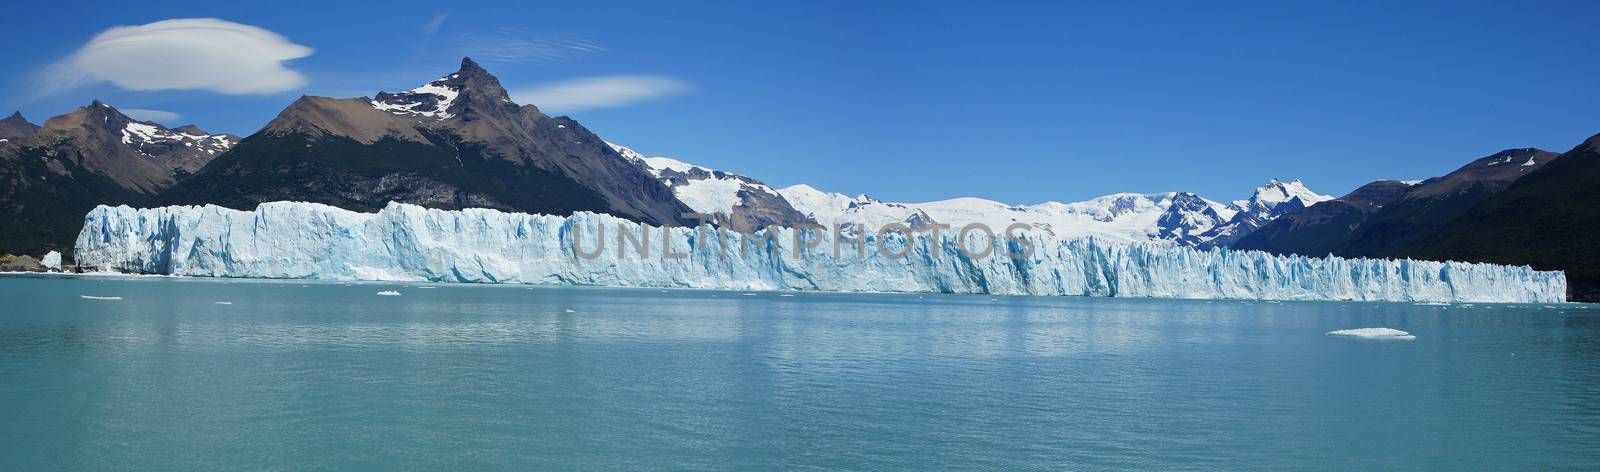 Perito Moreno Glacier, Argentinia by alfotokunst